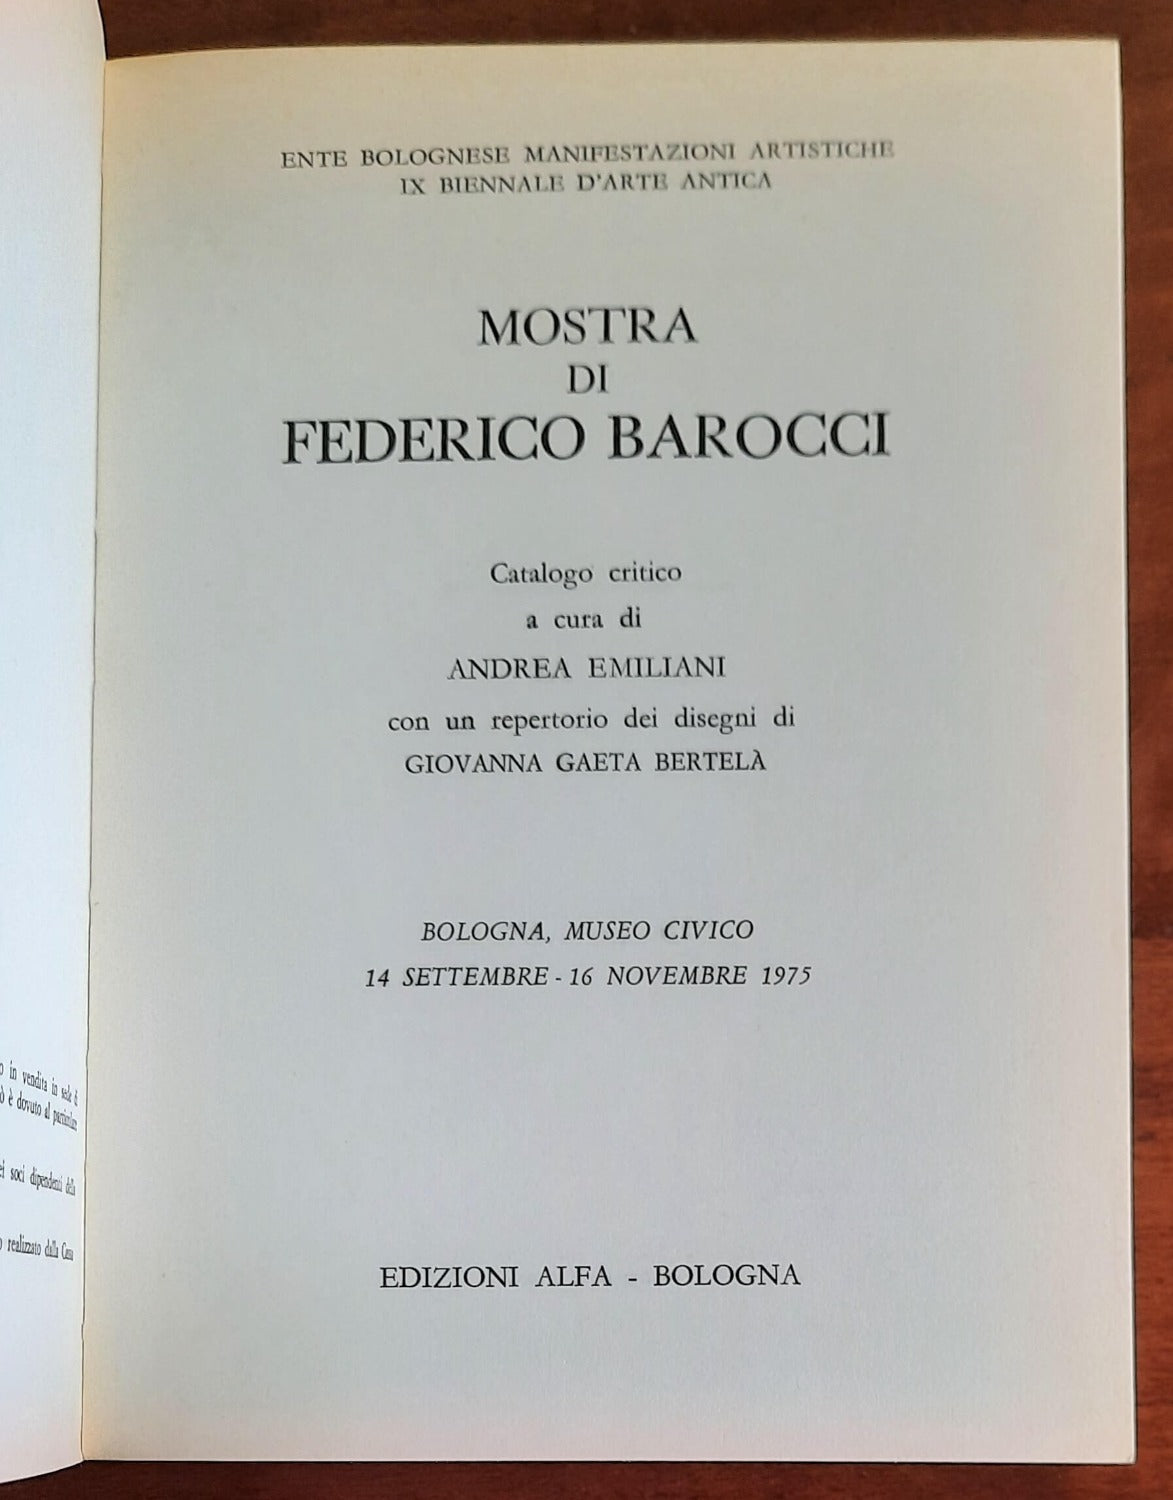 Mostra di Federico Barocci. (Bologna, Museo Civico 14 settembre - 16 novembre 1975)